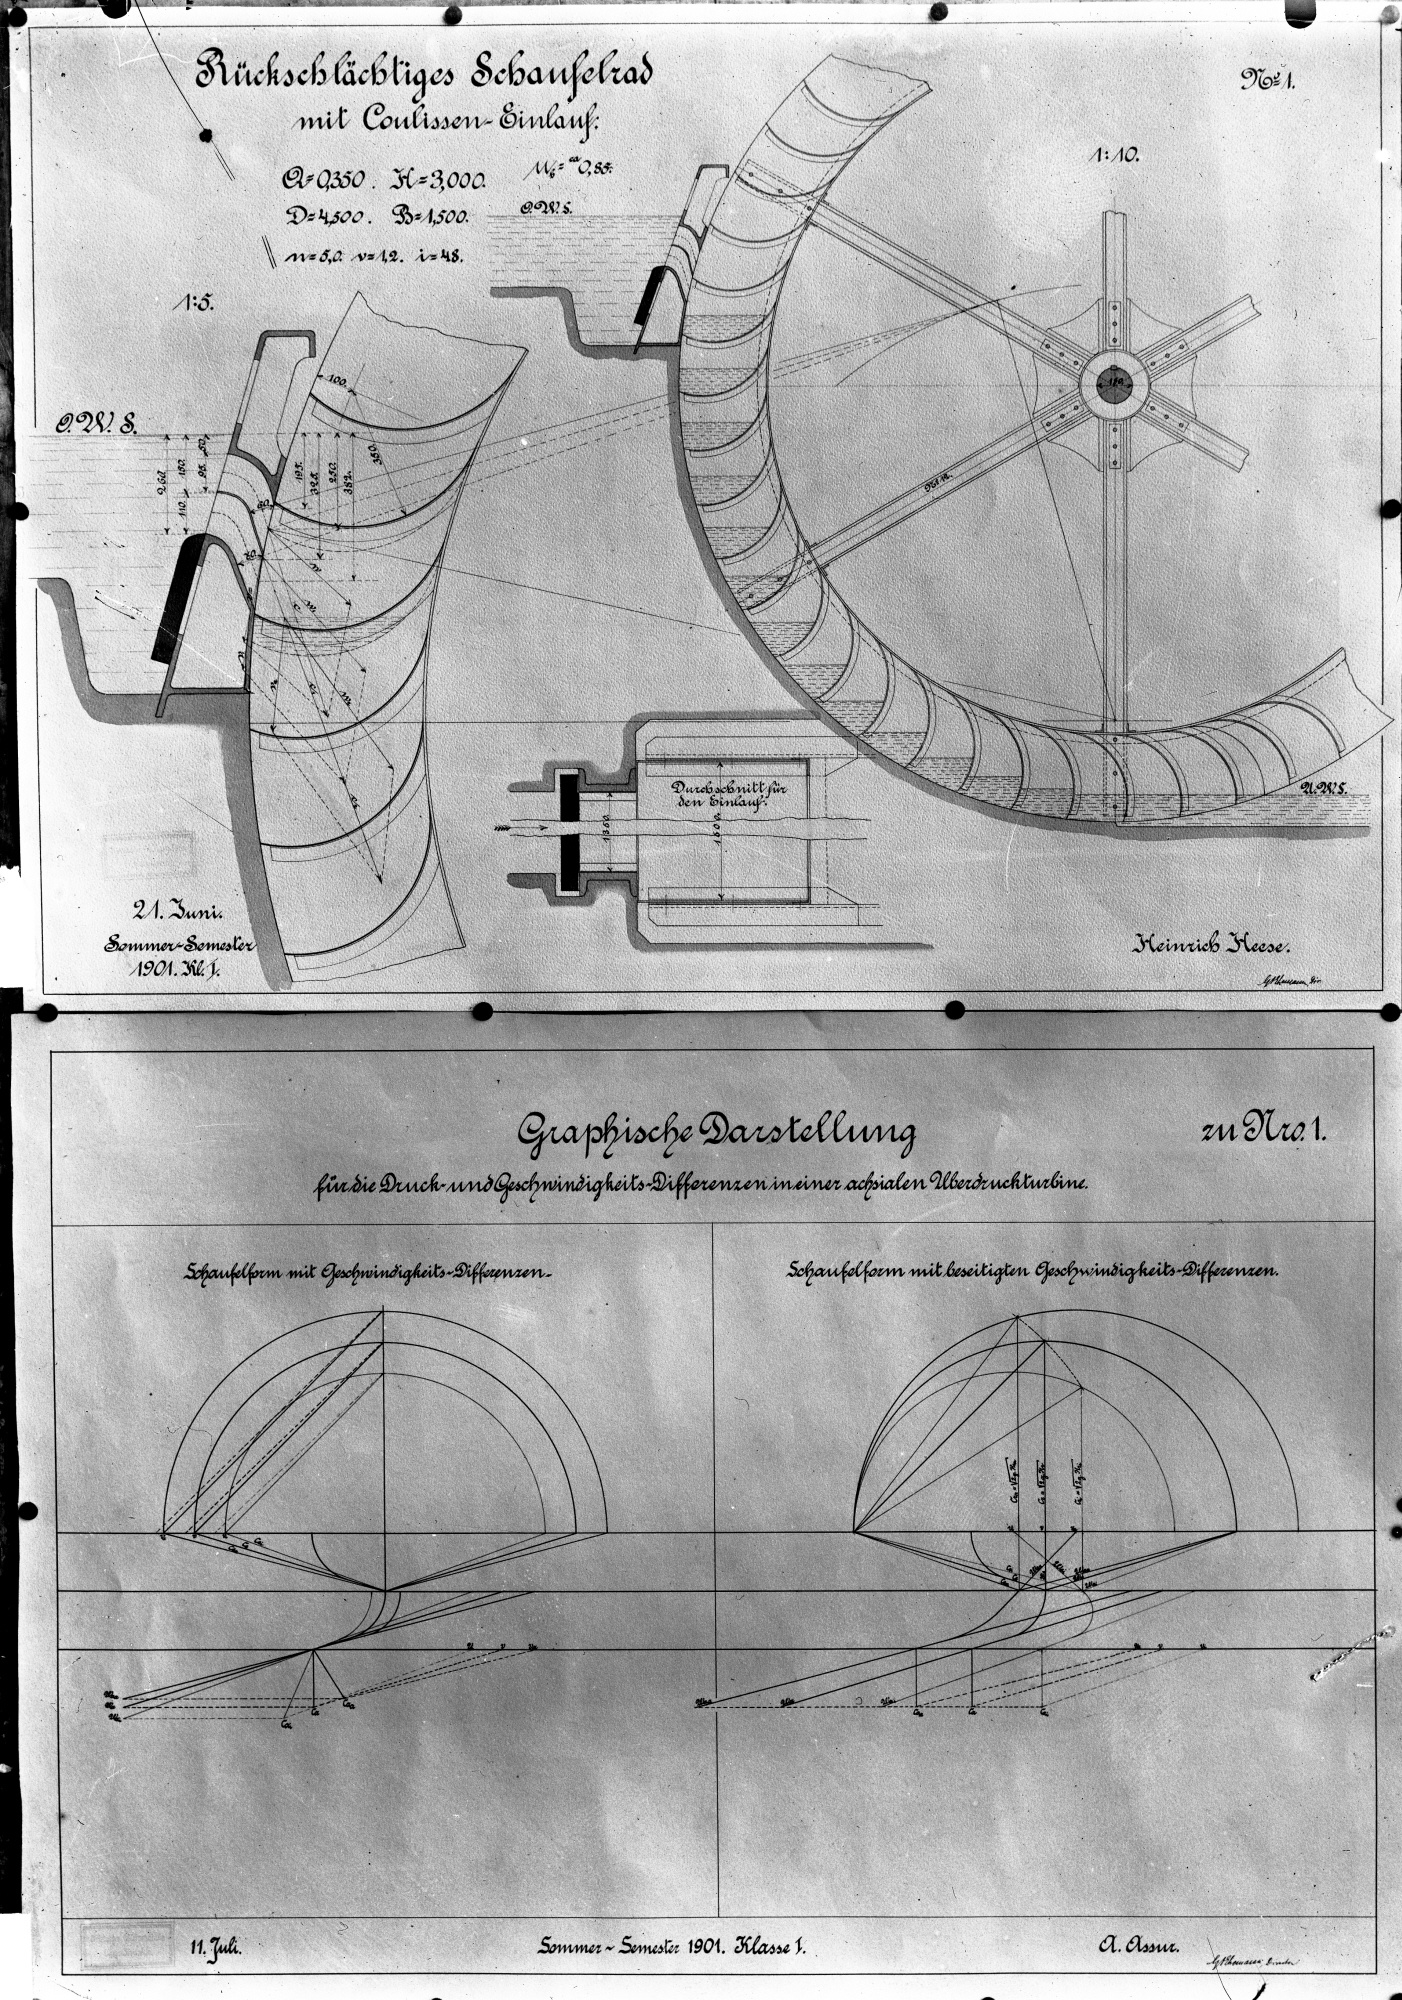 Rückschlächtiges Schaufelrad mit Coulissen-Einlauf (Kulisseneinlauf); Graphische Darstellung für die Druck- und Geschwindigkeitsdifferenzen in einer achsialen ( (Historische Mühle von Sanssouci CC BY-NC-SA)